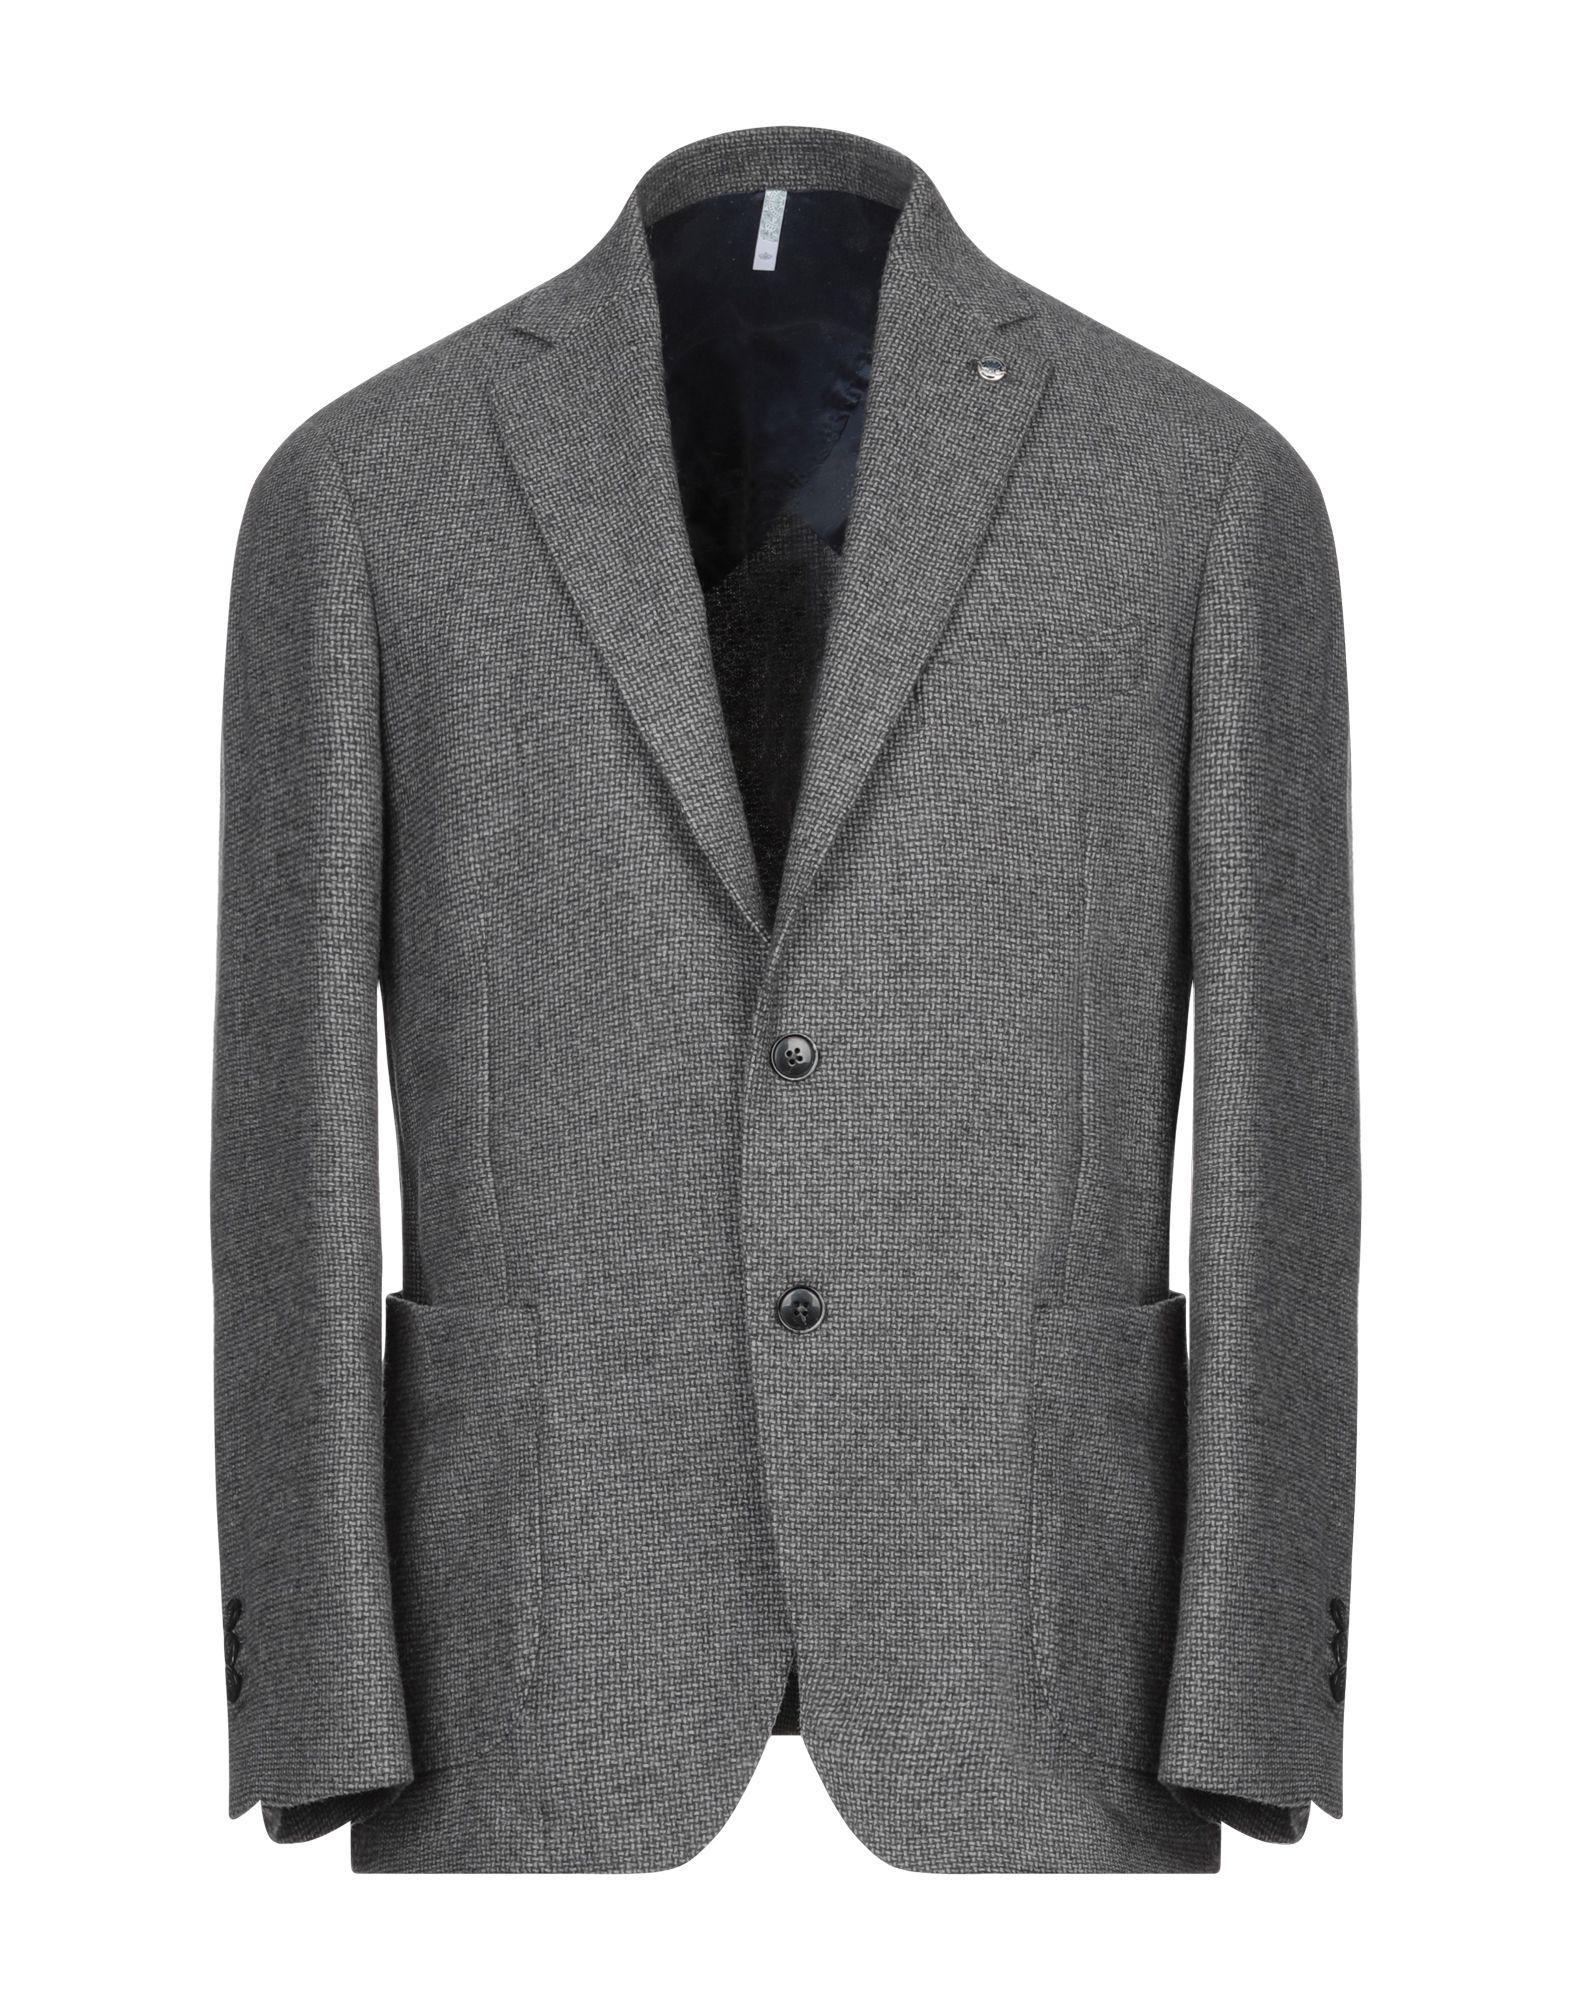 Domenico Tagliente Flannel Blazer in Grey (Gray) for Men - Lyst